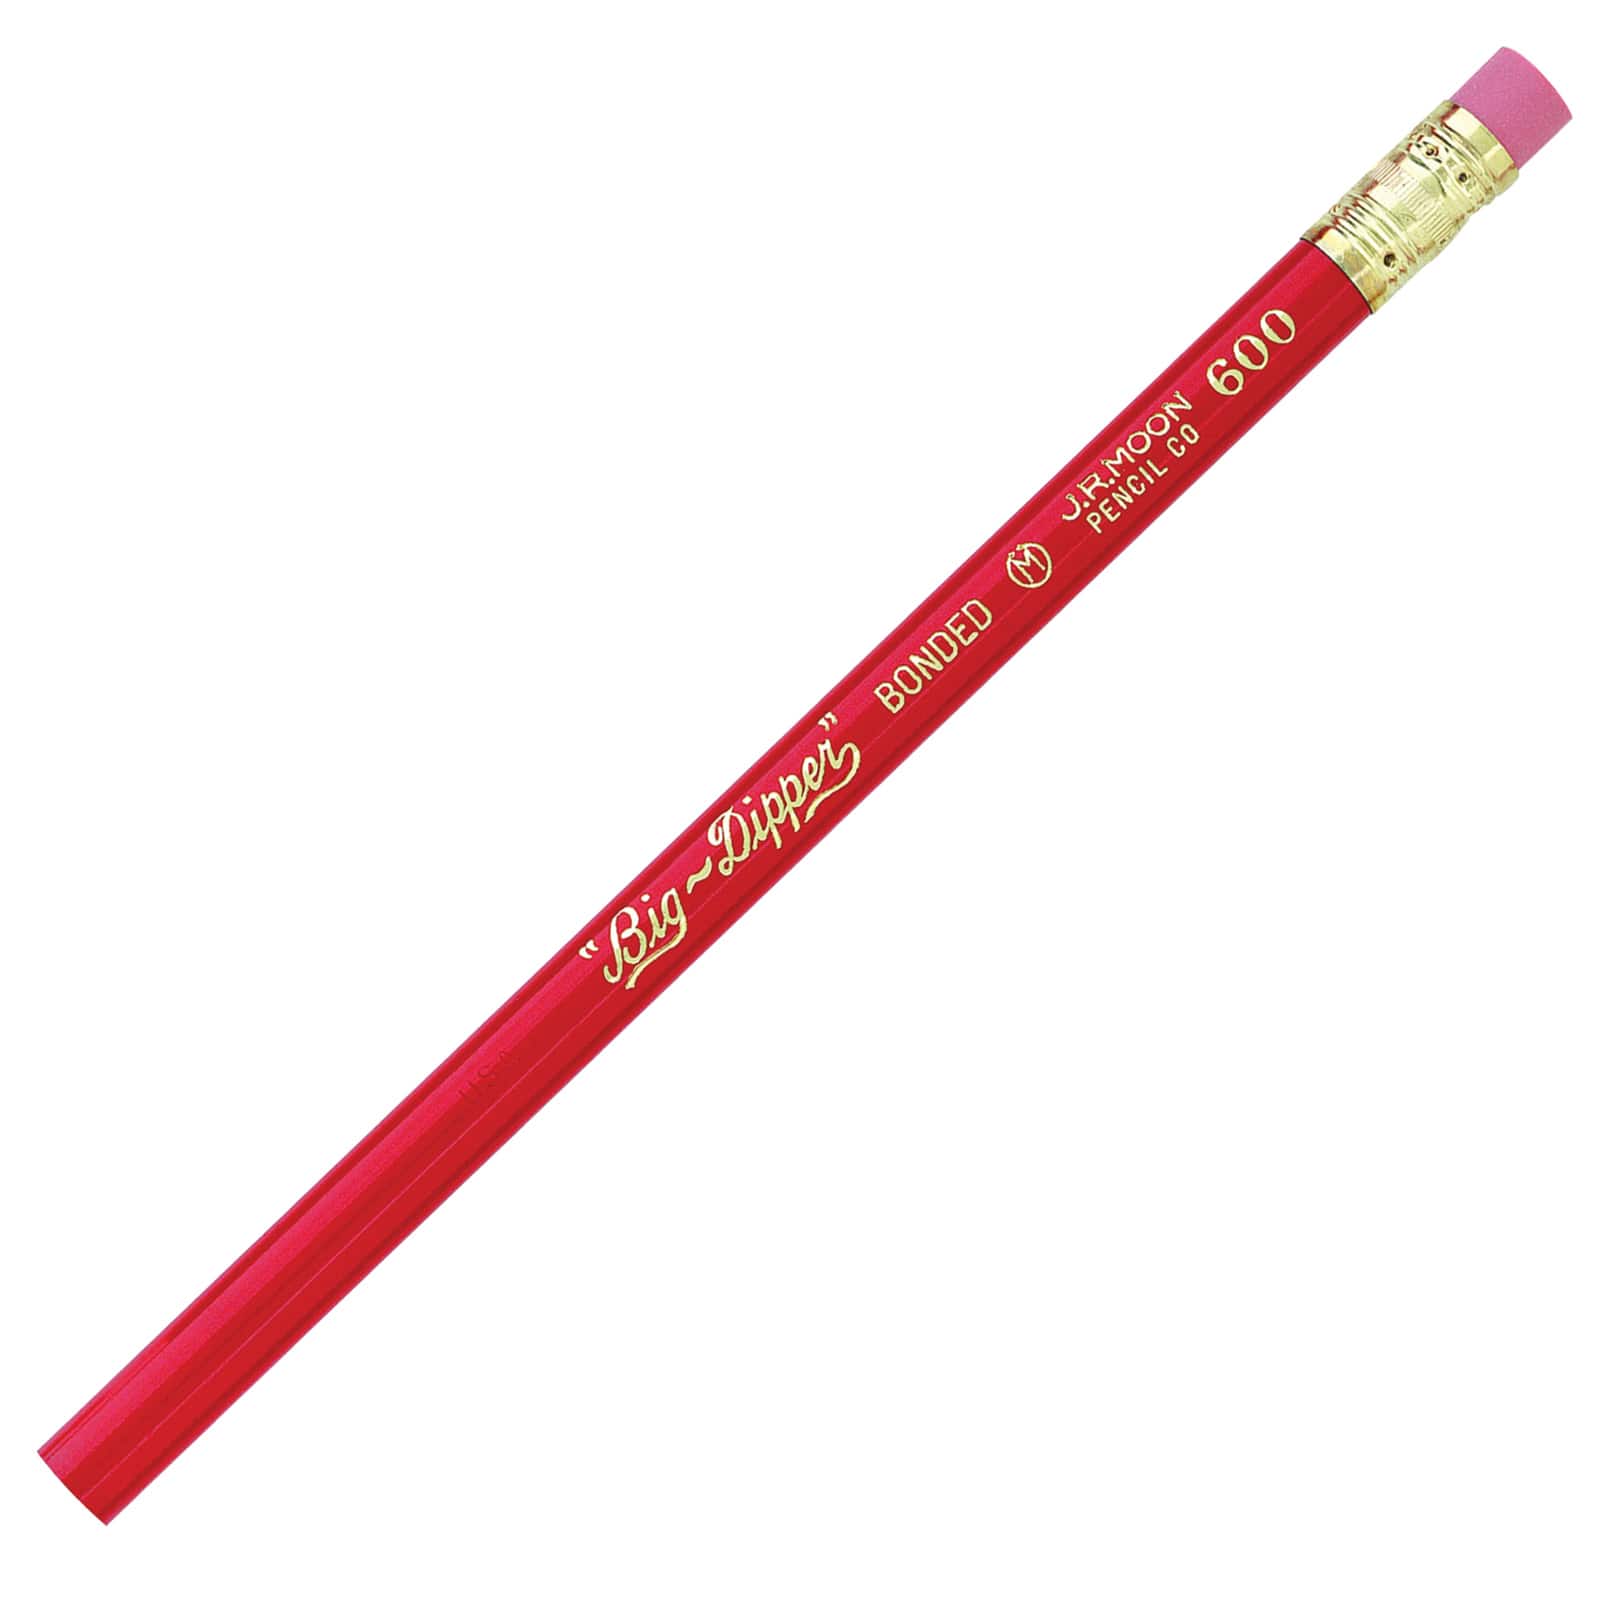 J.R. Moon Pencil Co. Big Dipper Pencils with Eraser 12 Per Pack - 6 Packs